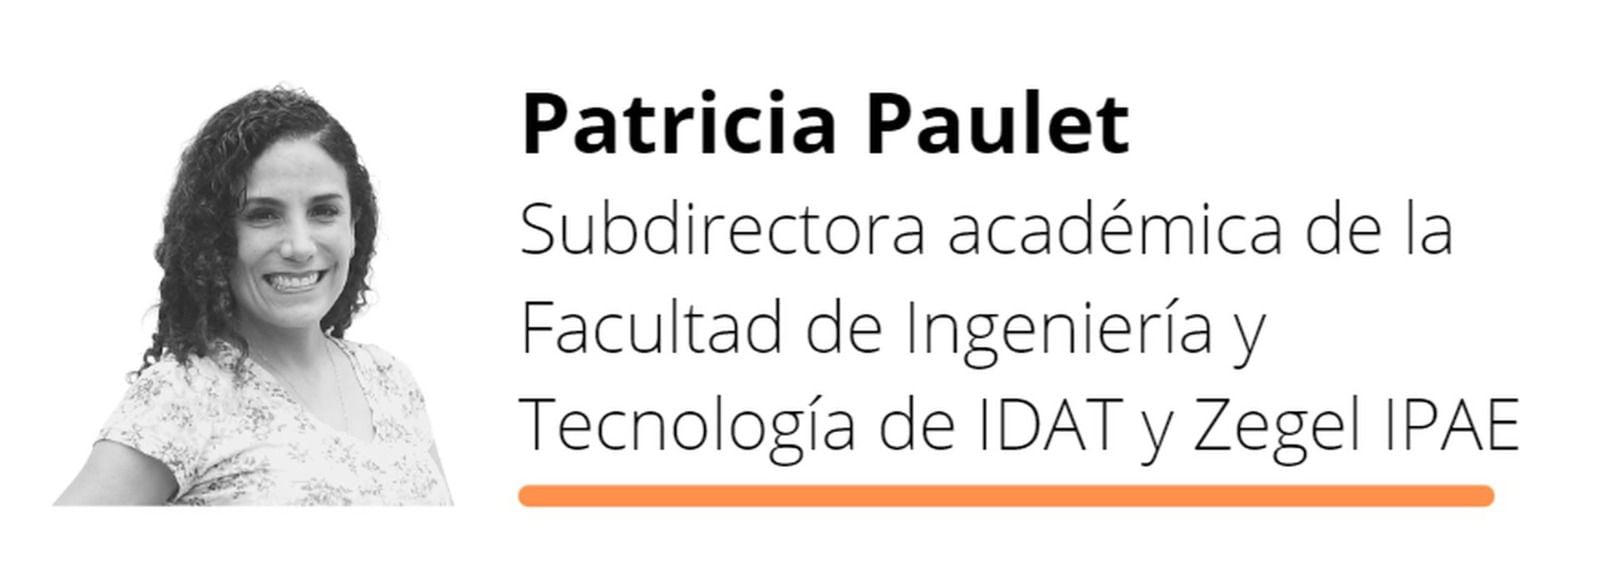 Patricia Paulet